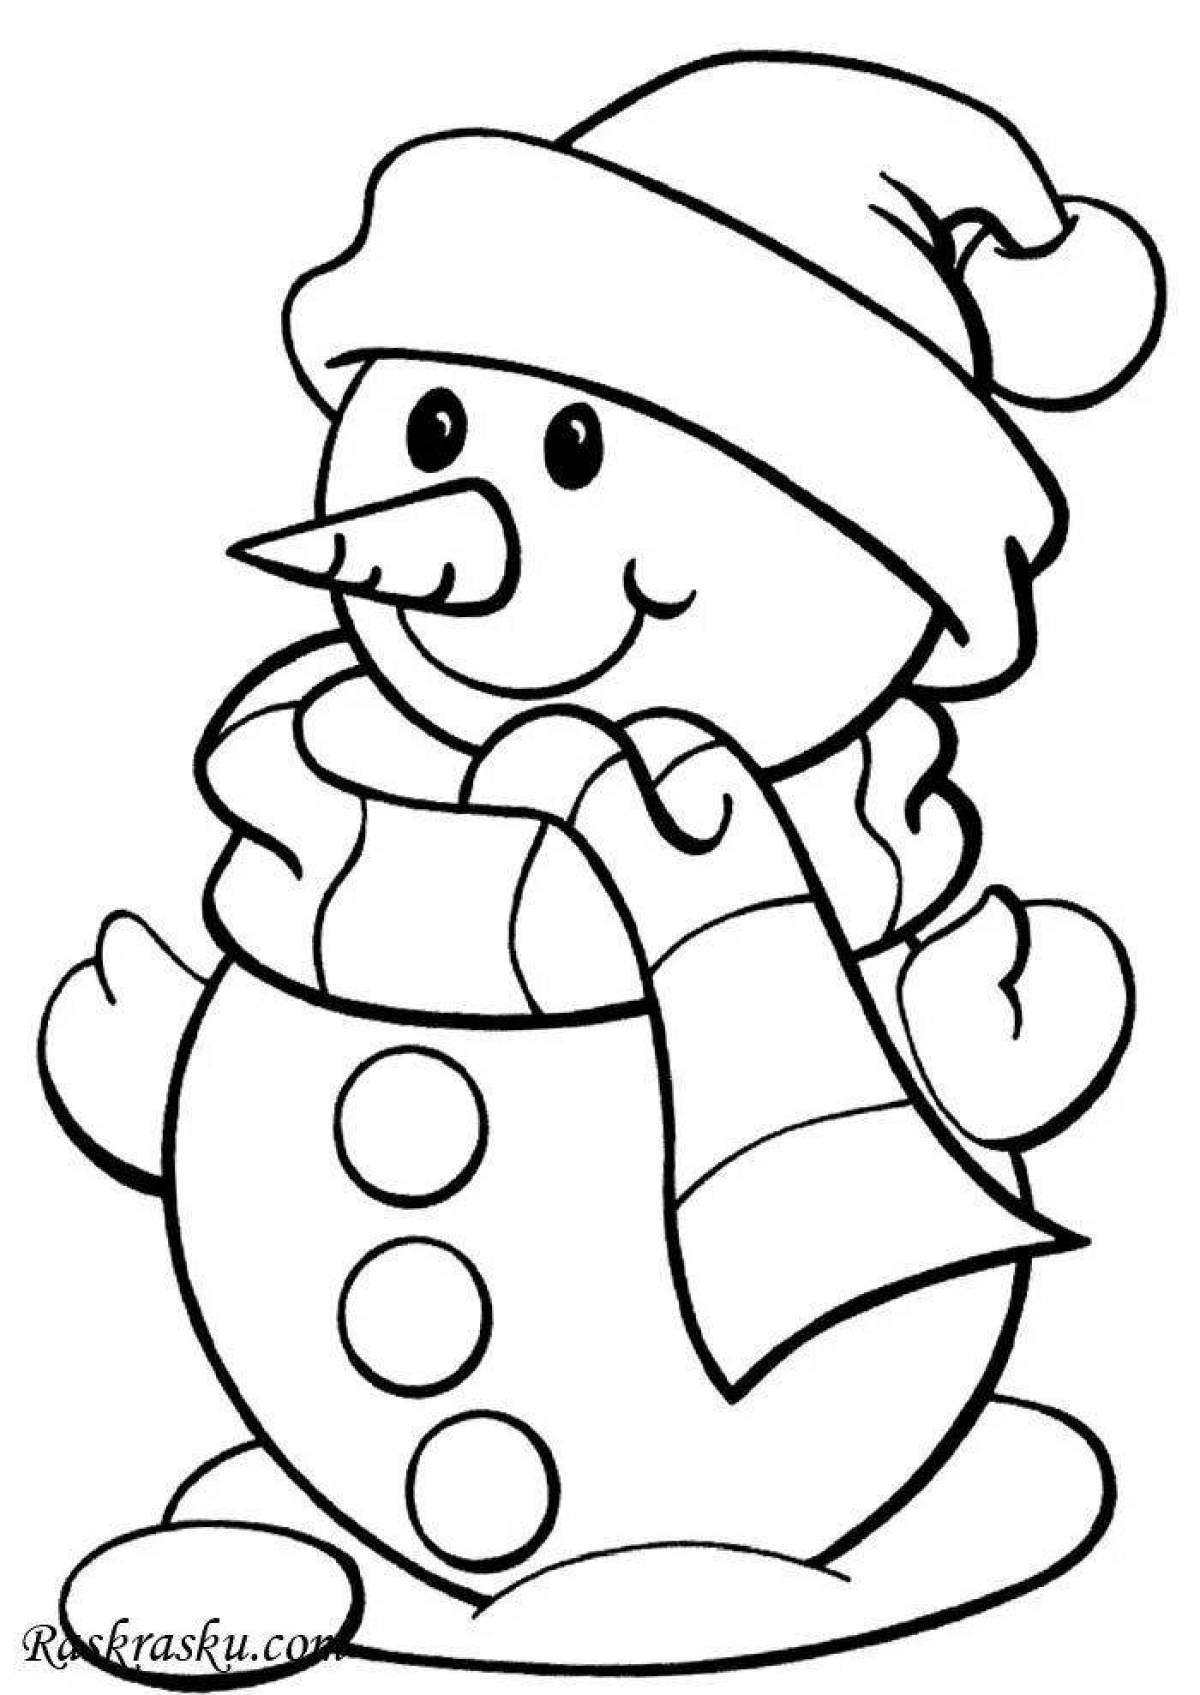 Остроумная раскраска смешной снеговик